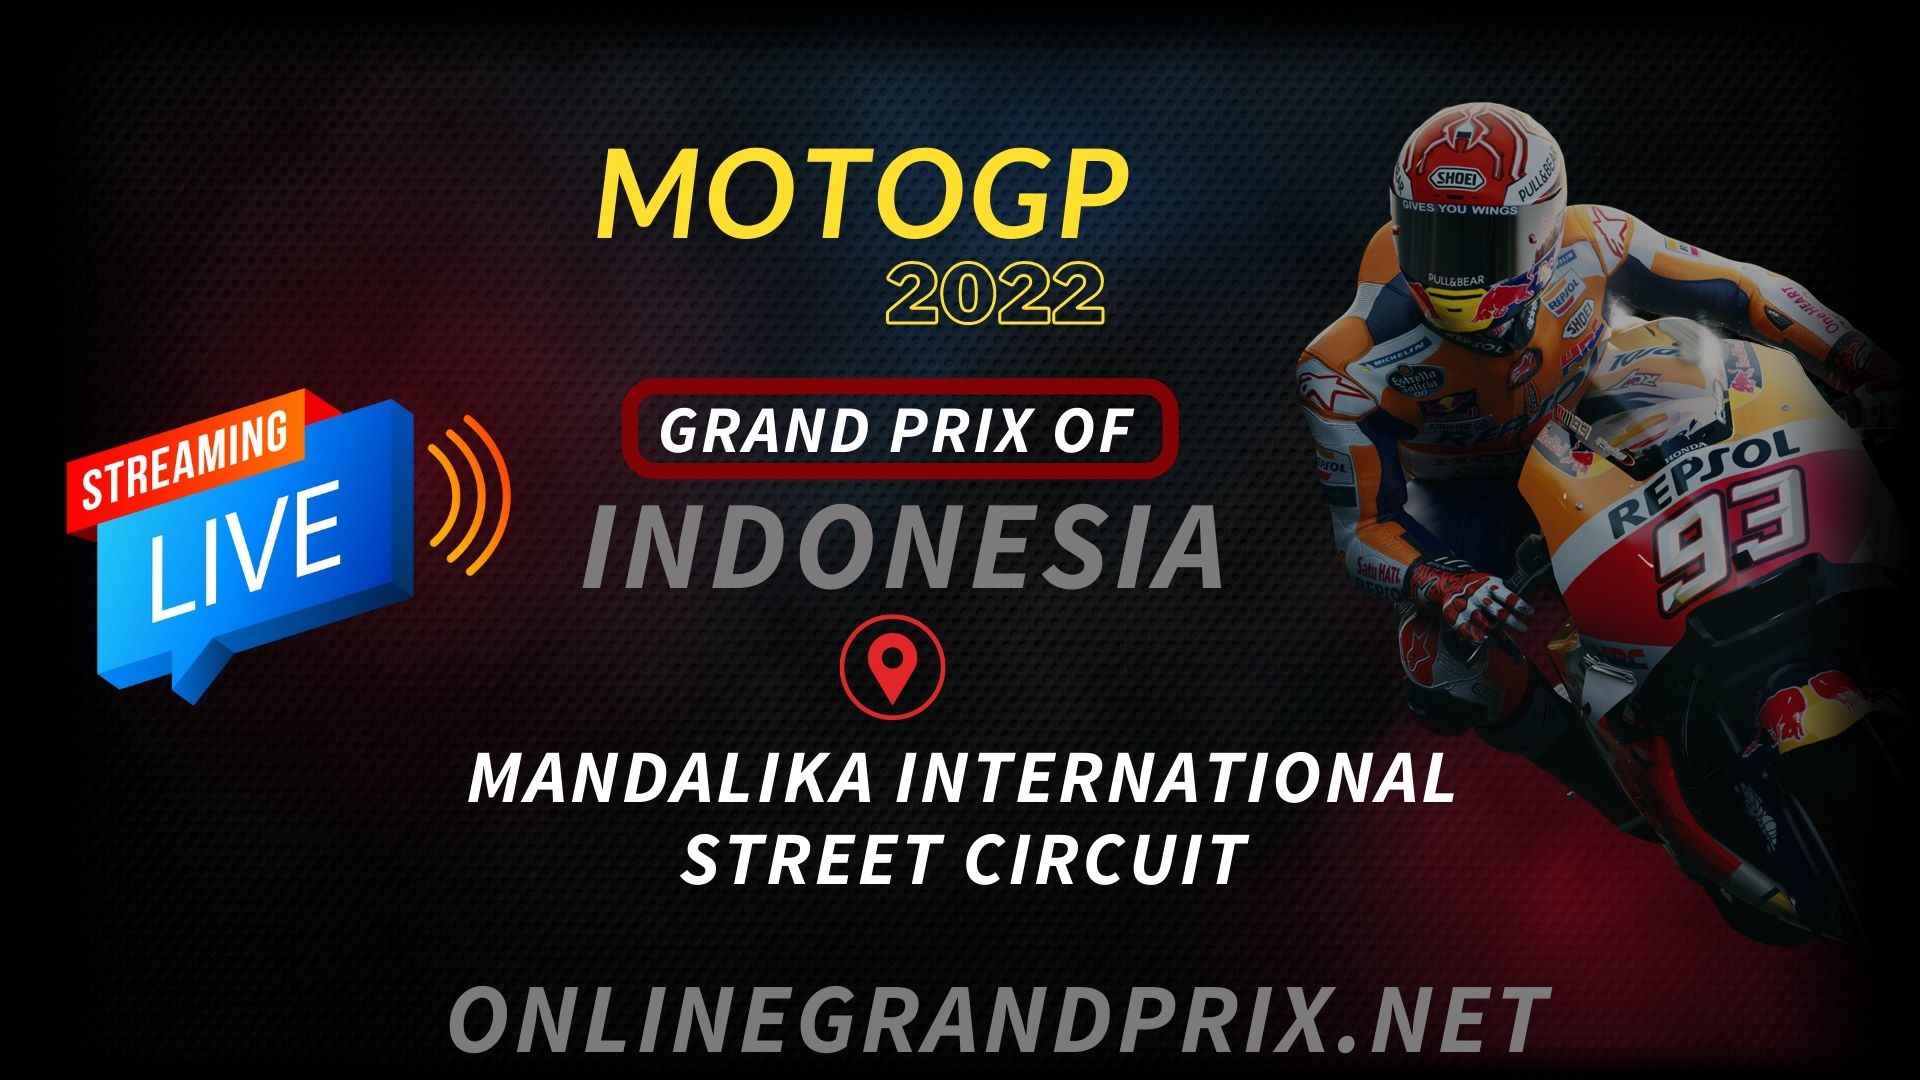 Watch MotoGP Indonesia Live Online